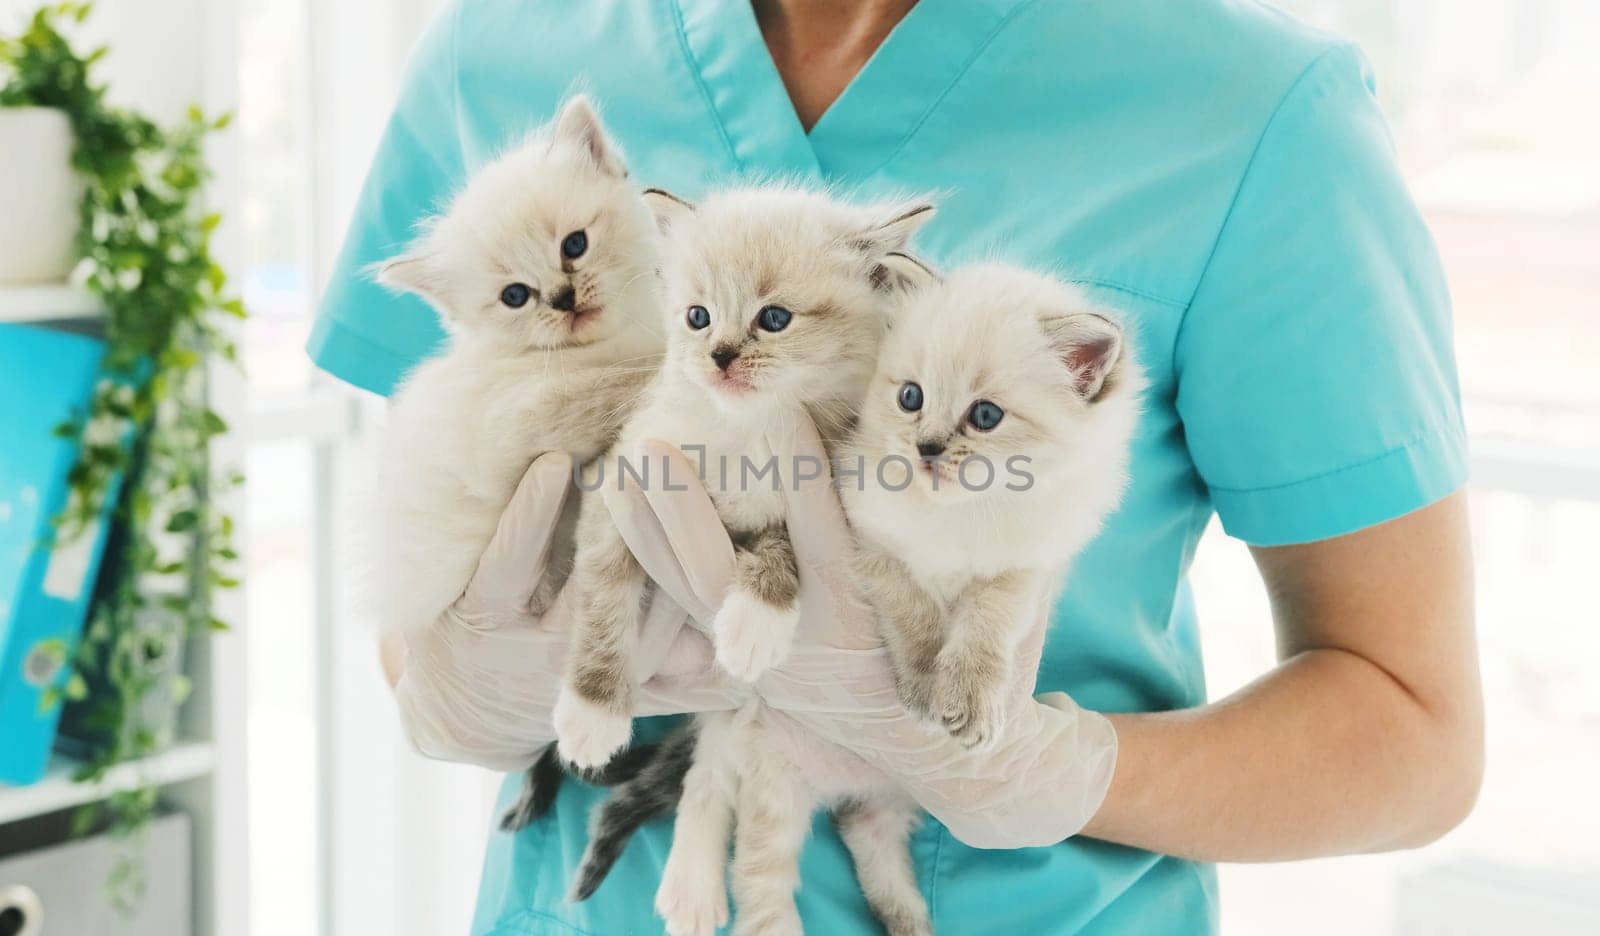 Kittens in hands of veterinarian in clinic by GekaSkr